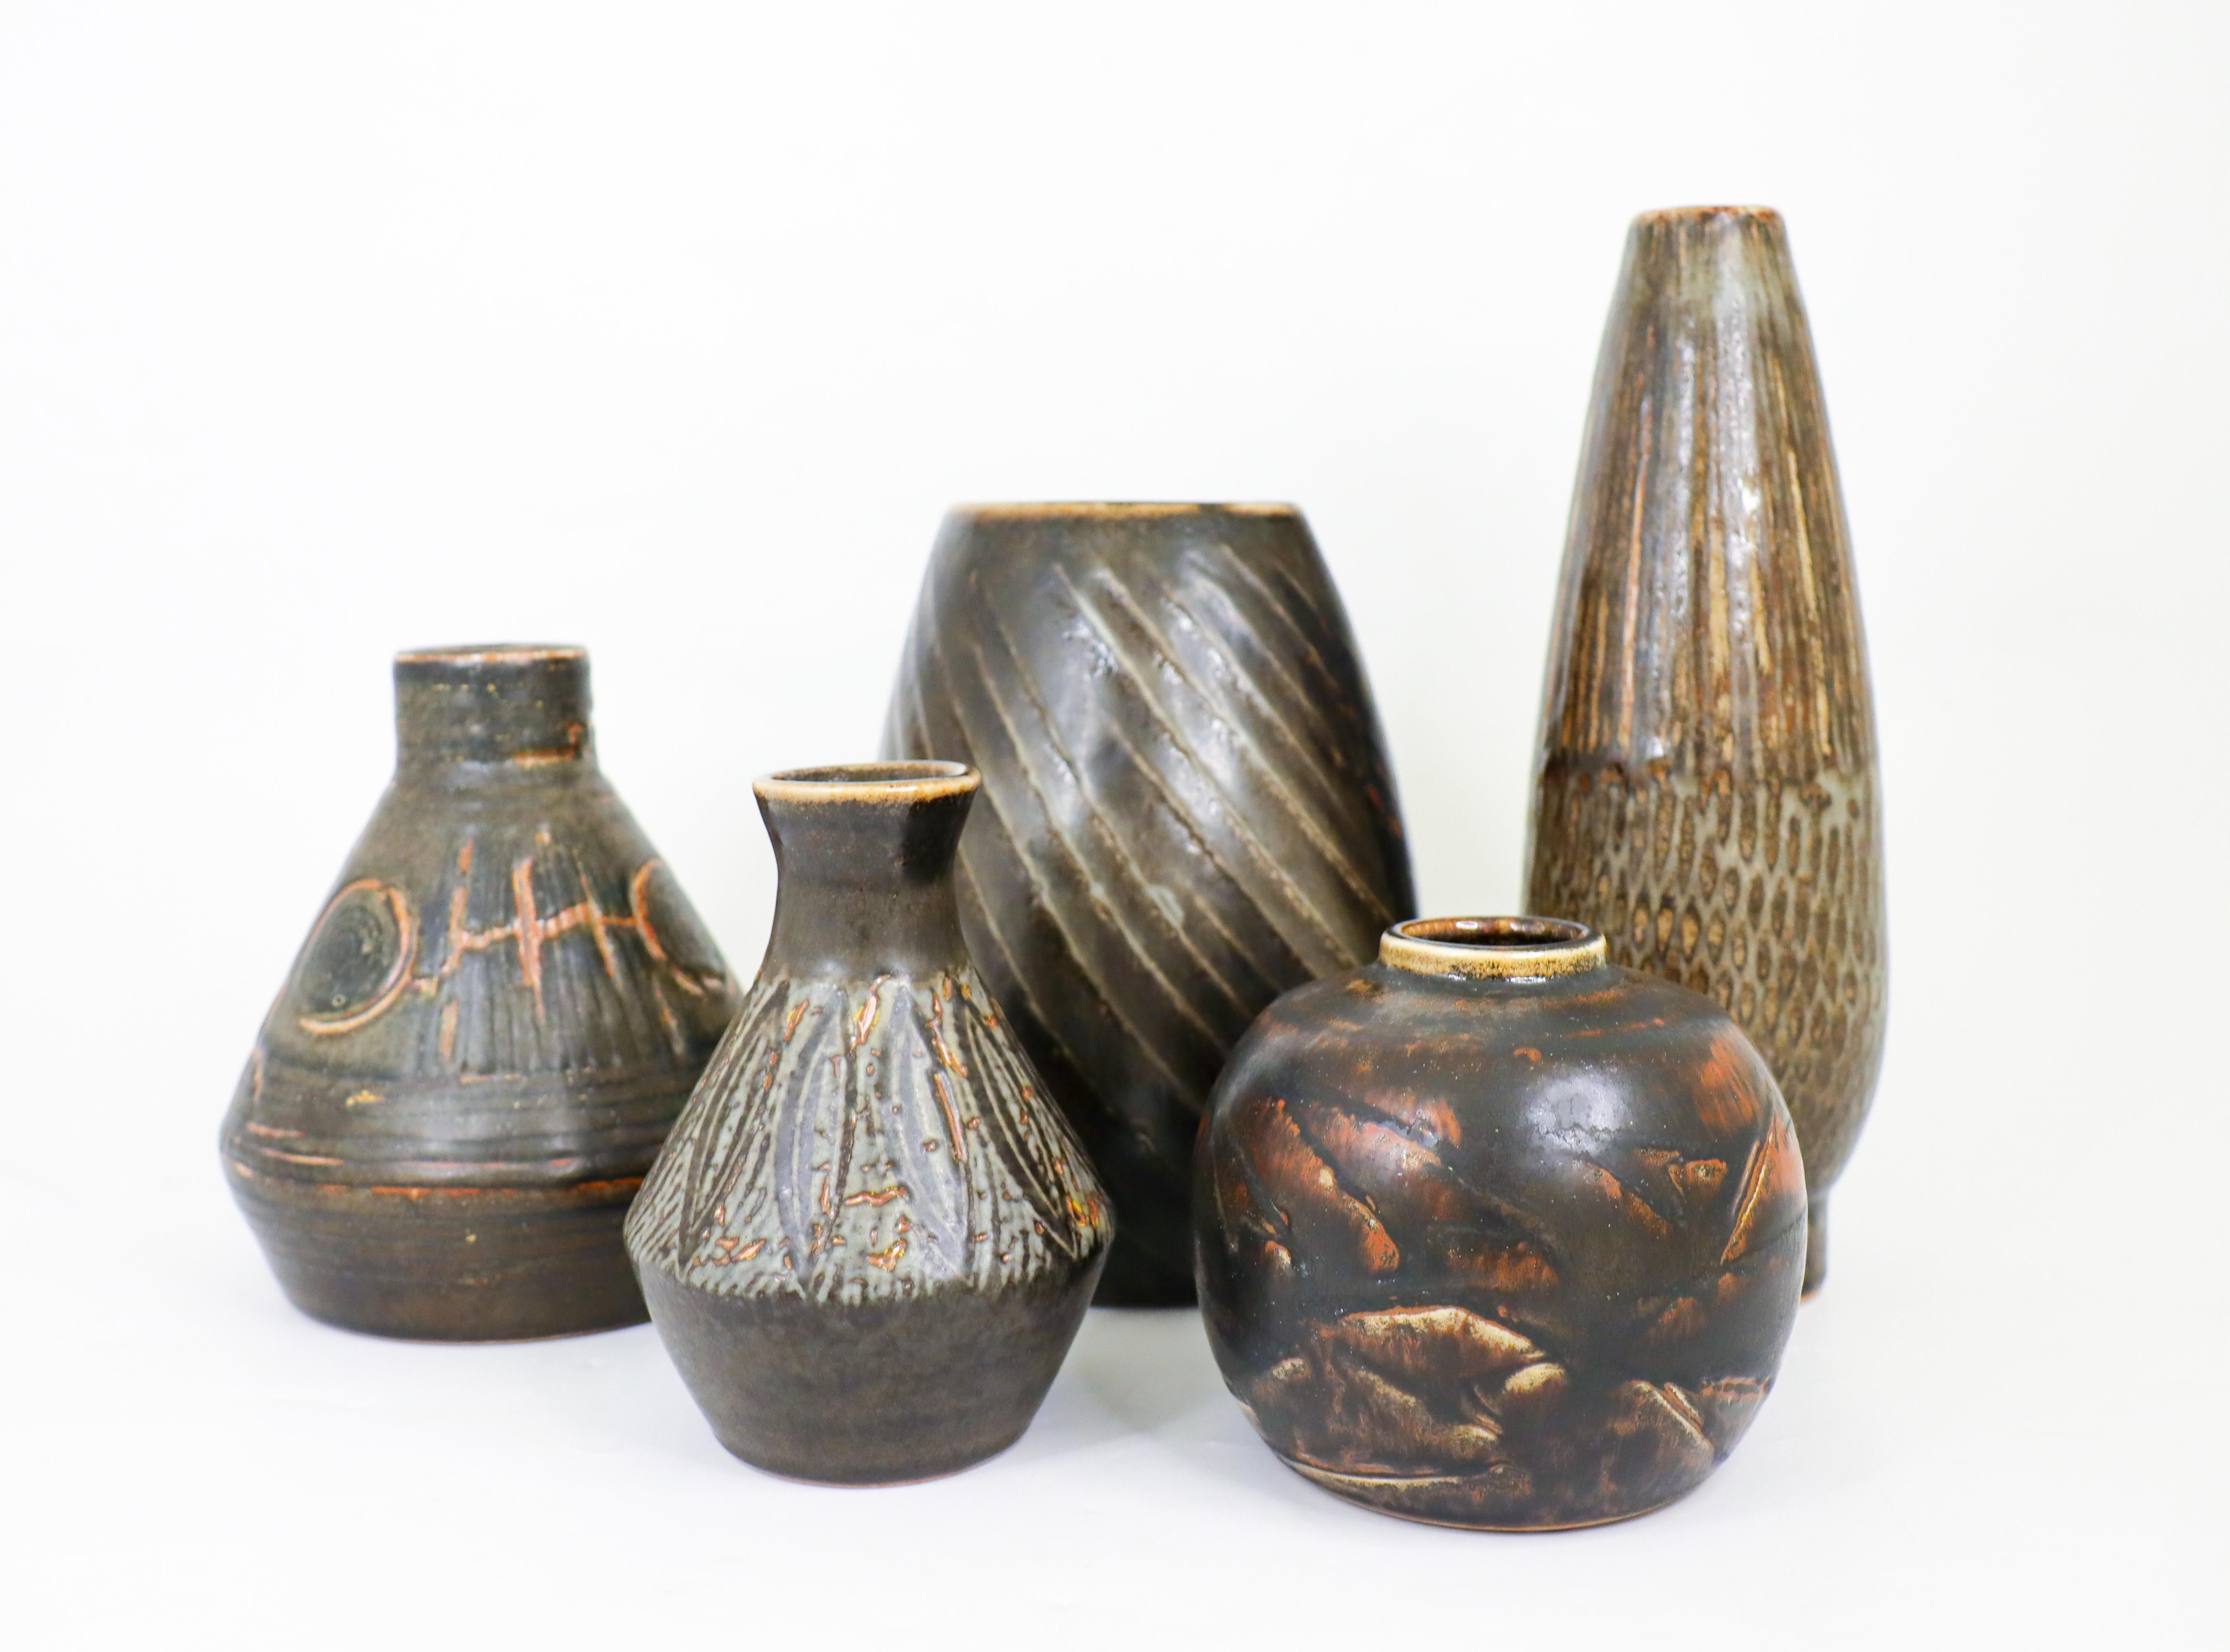 Eine Gruppe von fünf dunkelbraun/schwarzen Vasen mit einer atemberaubenden Glasur, entworfen von Carl-Harry Stålhane bei Rörstrand in den 1950er und 1960er Jahren. Die Vasen sind zwischen  11,5 - 2475 cm hoch und in ausgezeichnetem Zustand. Drei der